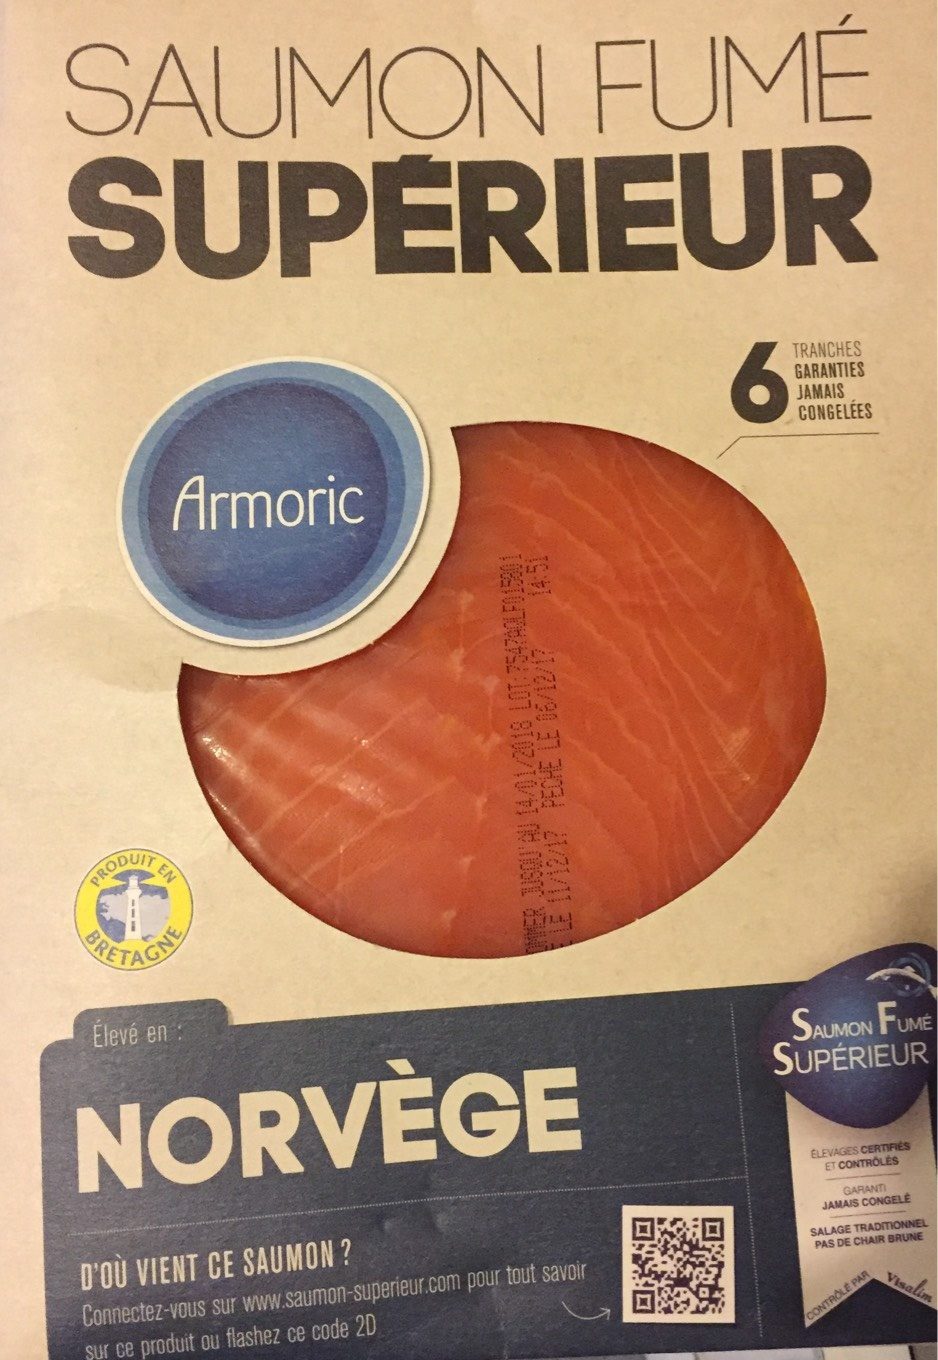 Saumon fumé superieur - Product - fr